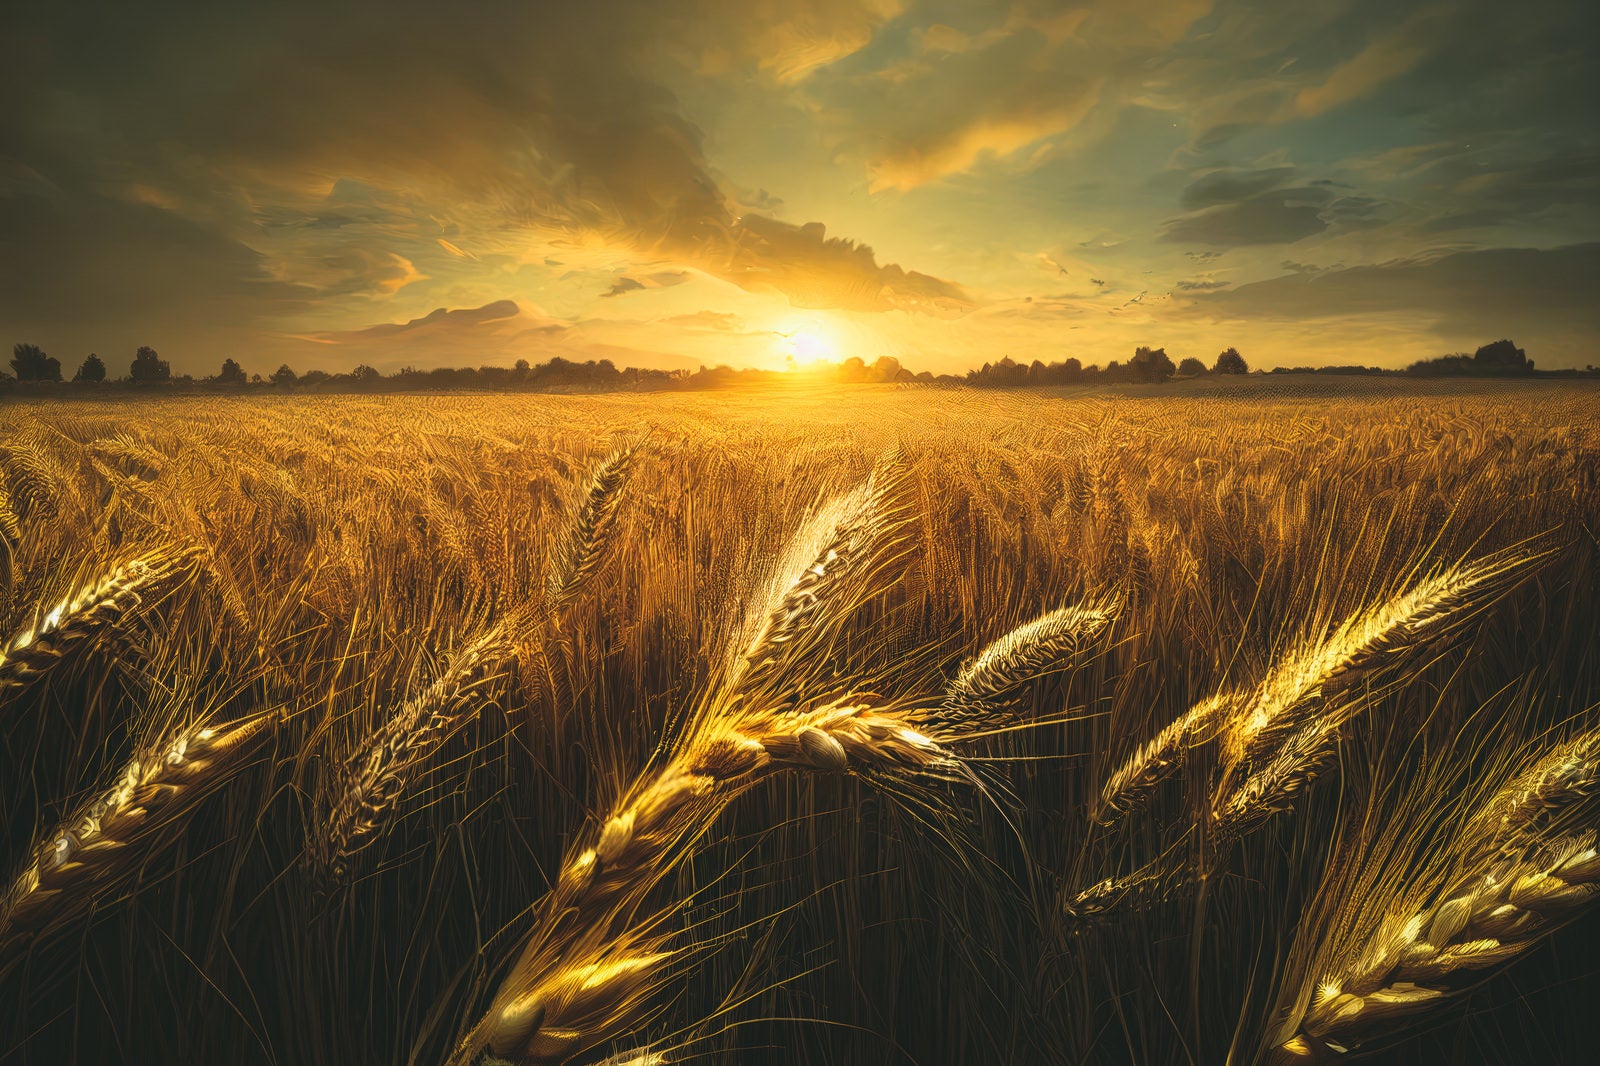 「黄金色に染まる小麦の穂」の写真